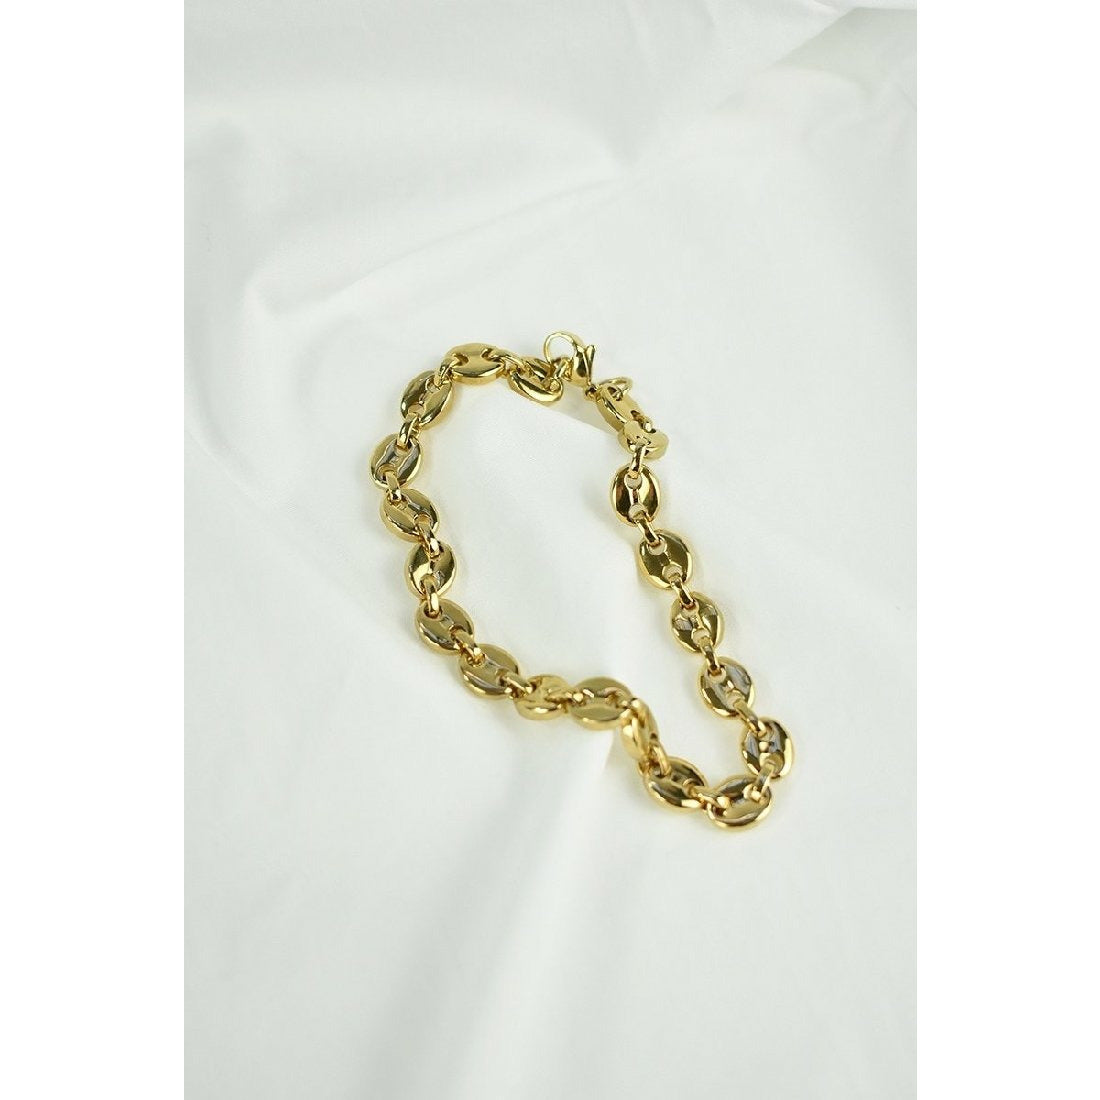 Peta + Jain Skylar Chain Link Bracelet - Gold - Little Extras Lifestyle Boutique